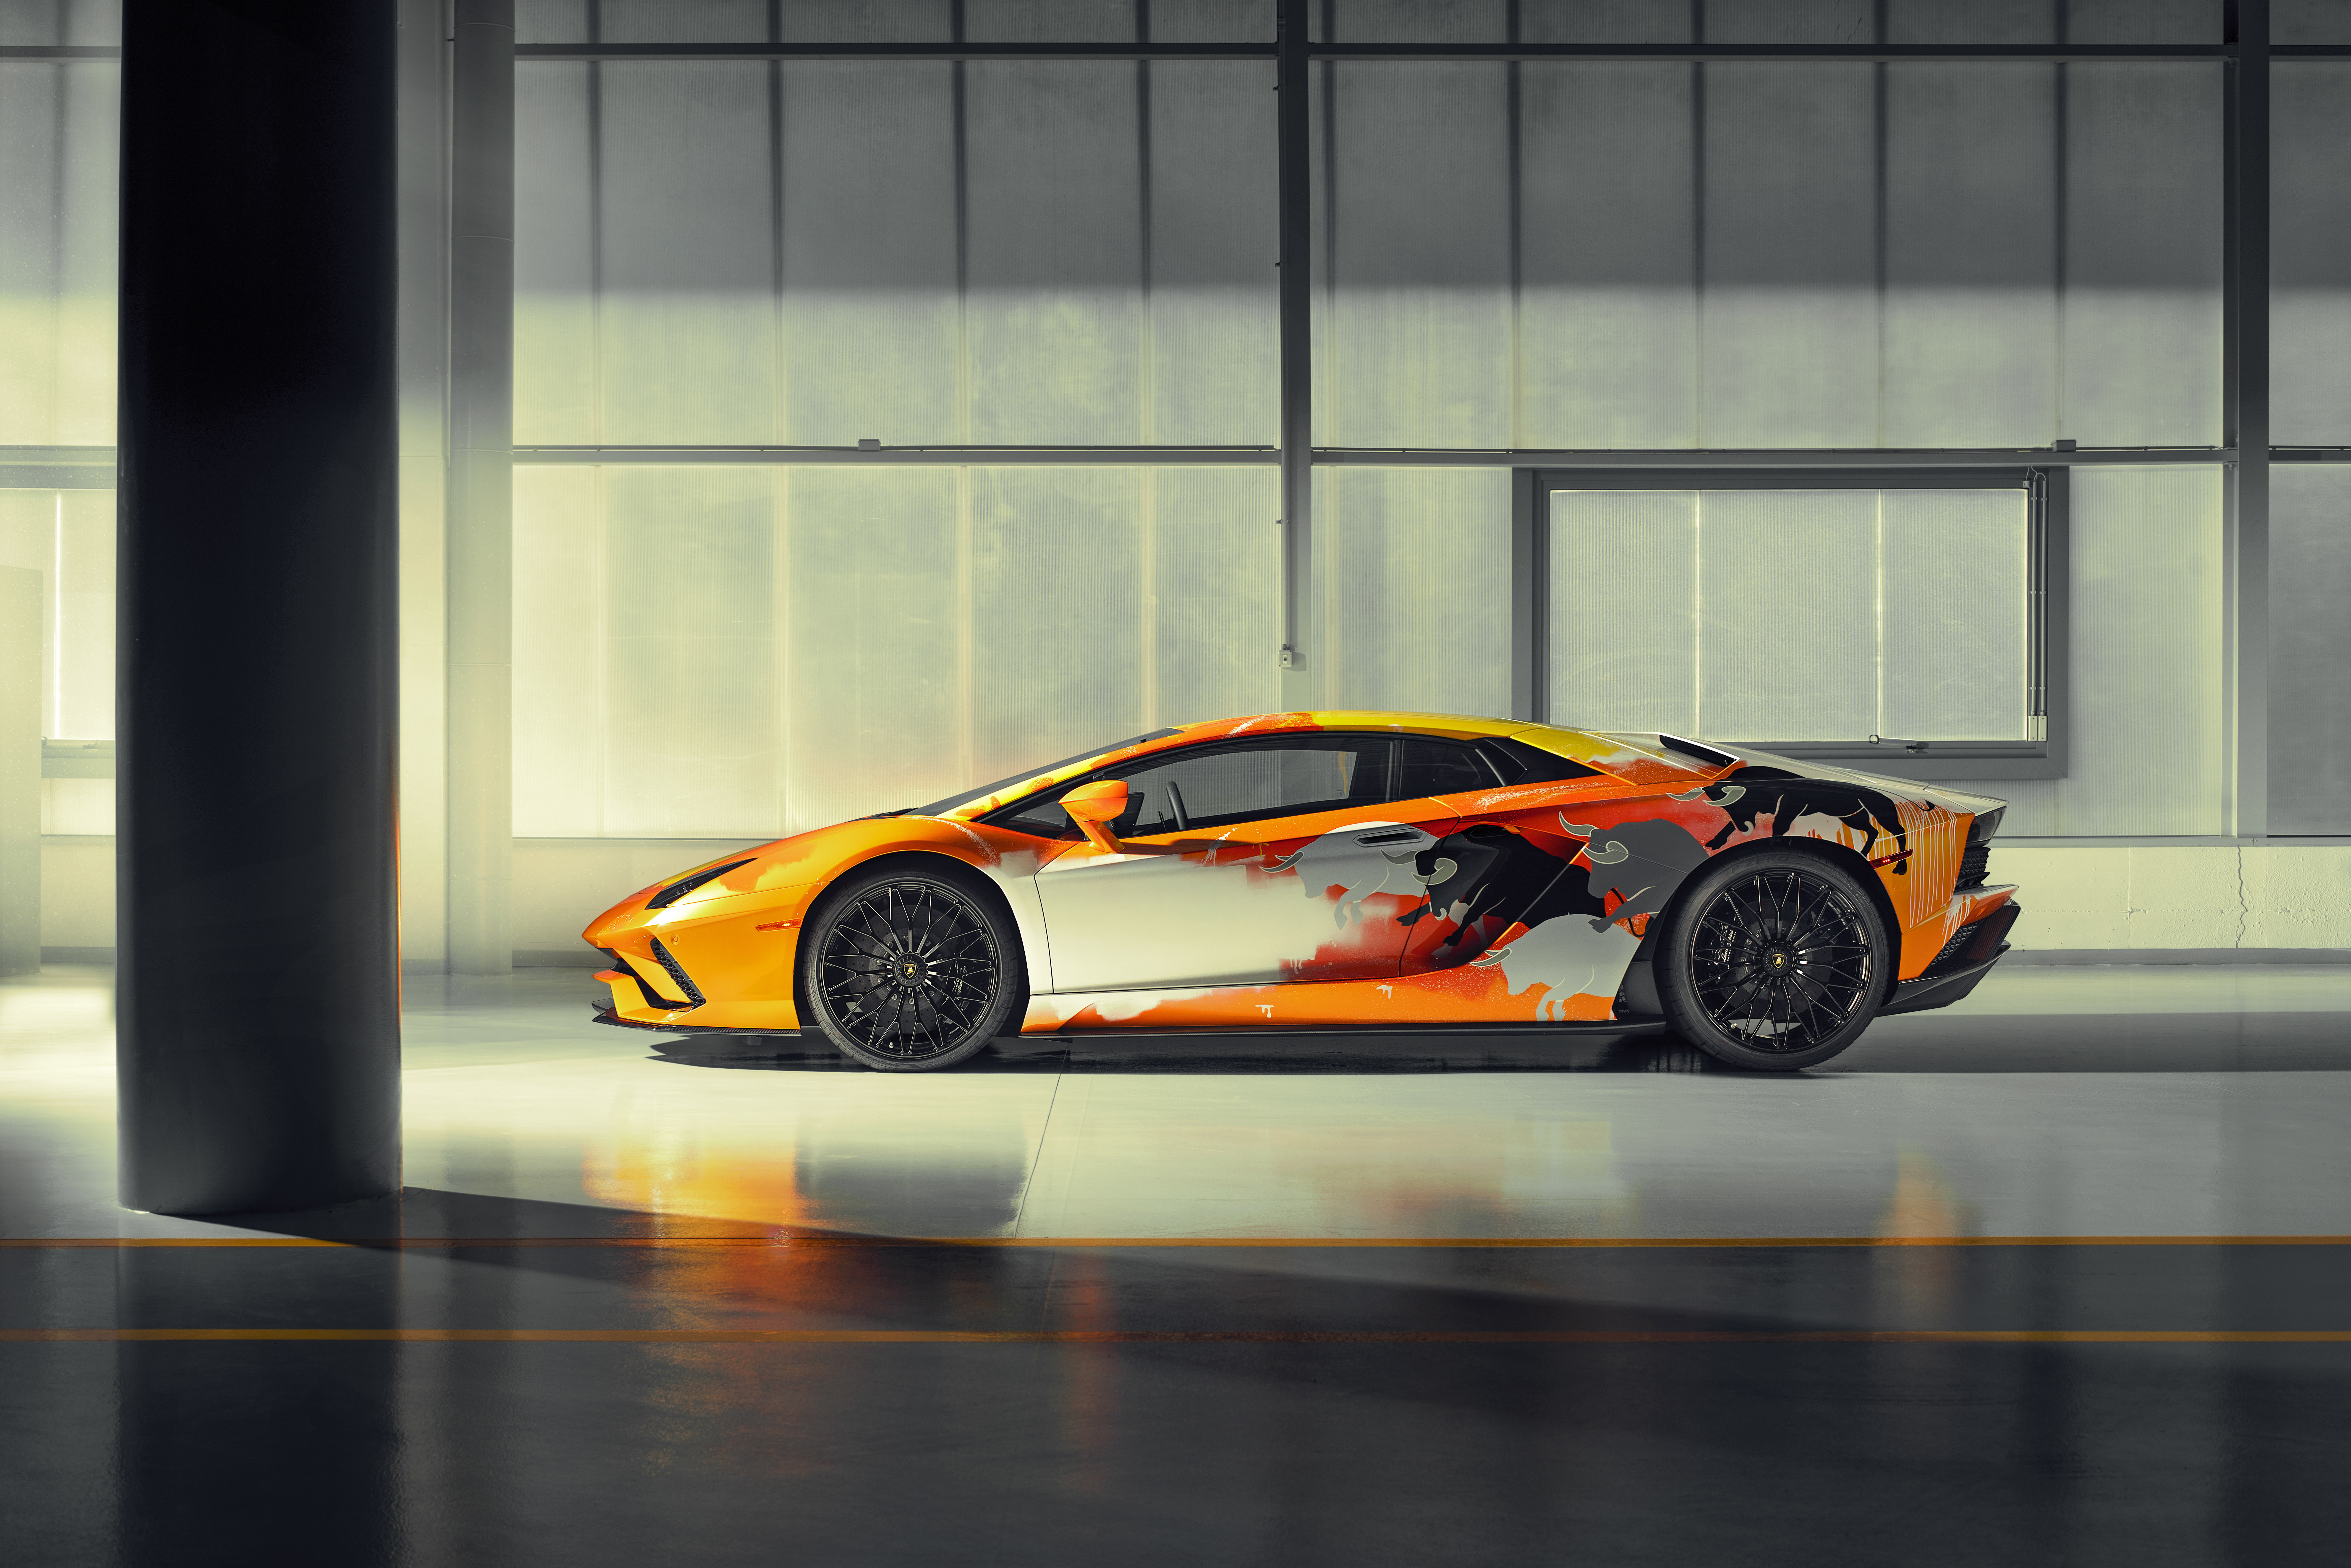 Vượt lên những mặt phẳng tưởng chừng không thể, chiếc xe Lamborghini nổi bật giữa những siêu xe khác với thiết kế đột phá và hiệu suất vượt trội. Cùng ngắm nhìn tỷ mỷ chi tiết của mẫu xe với bức tranh vẽ xe ô tô Lamborghini tuyệt đẹp này!